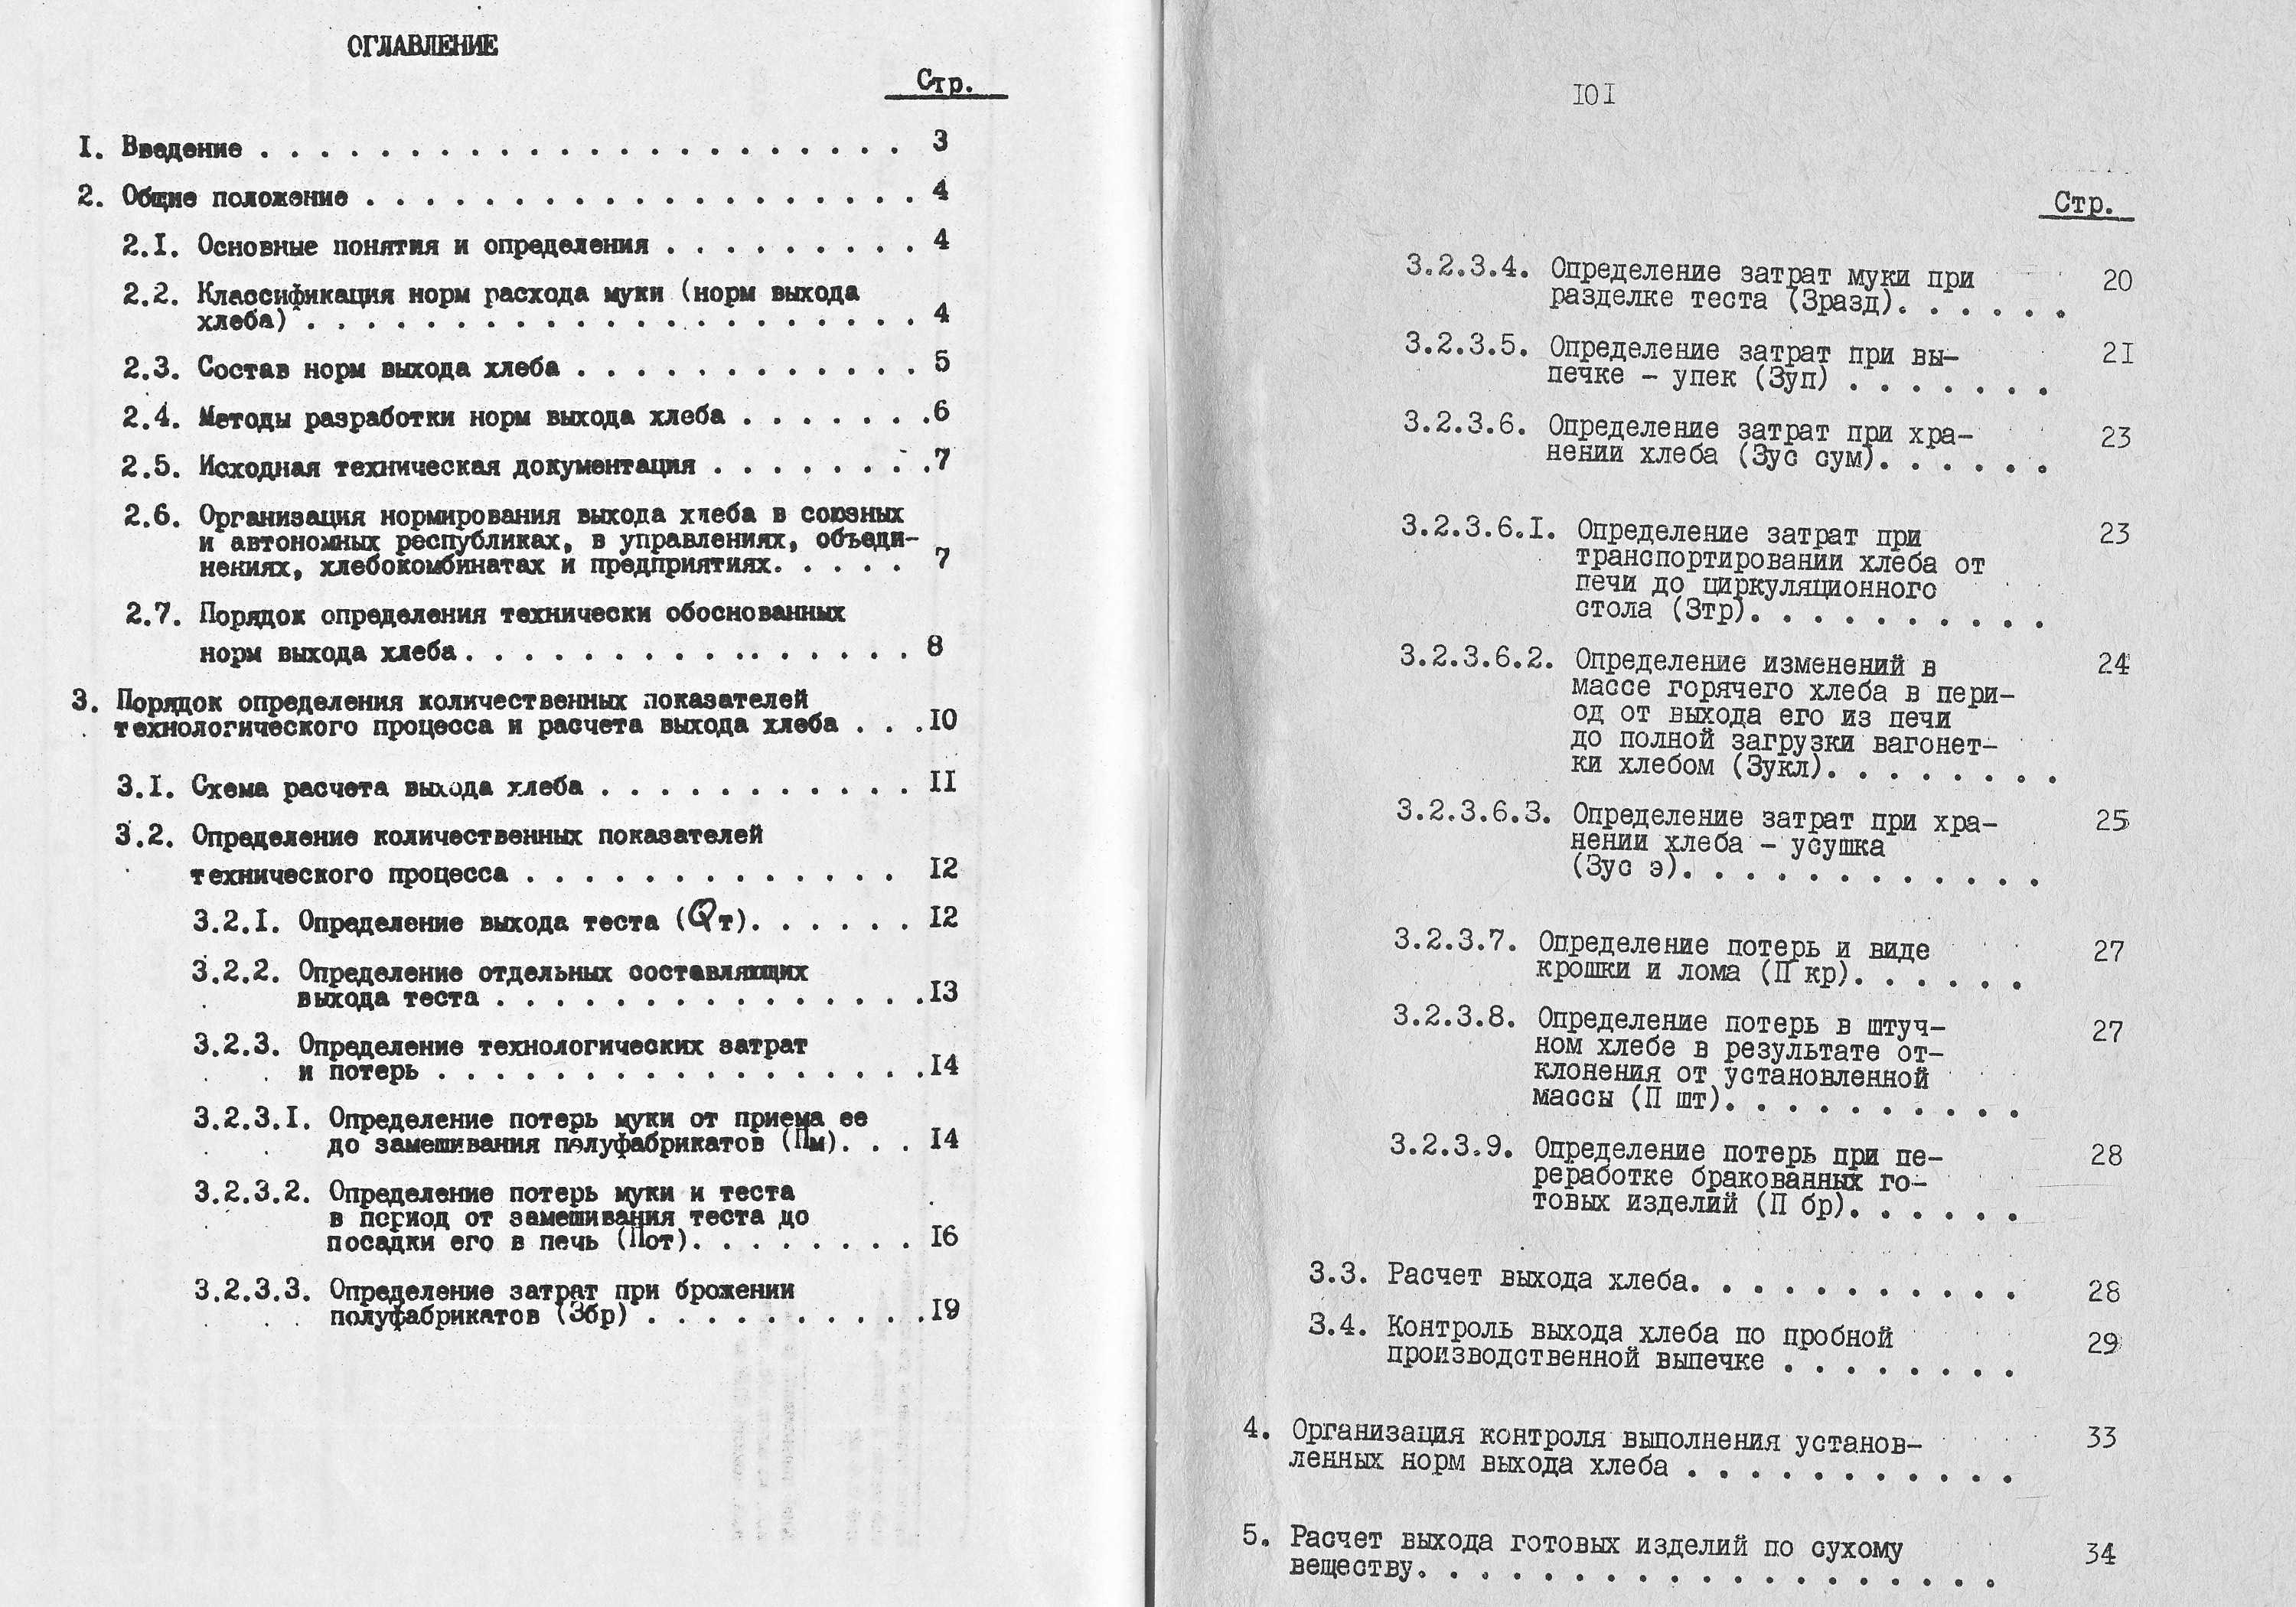 Инструкция по нормированию расхода муки (выхода хлеба) в хлебопекарной промышленности 1984 г. страницы 100‒101